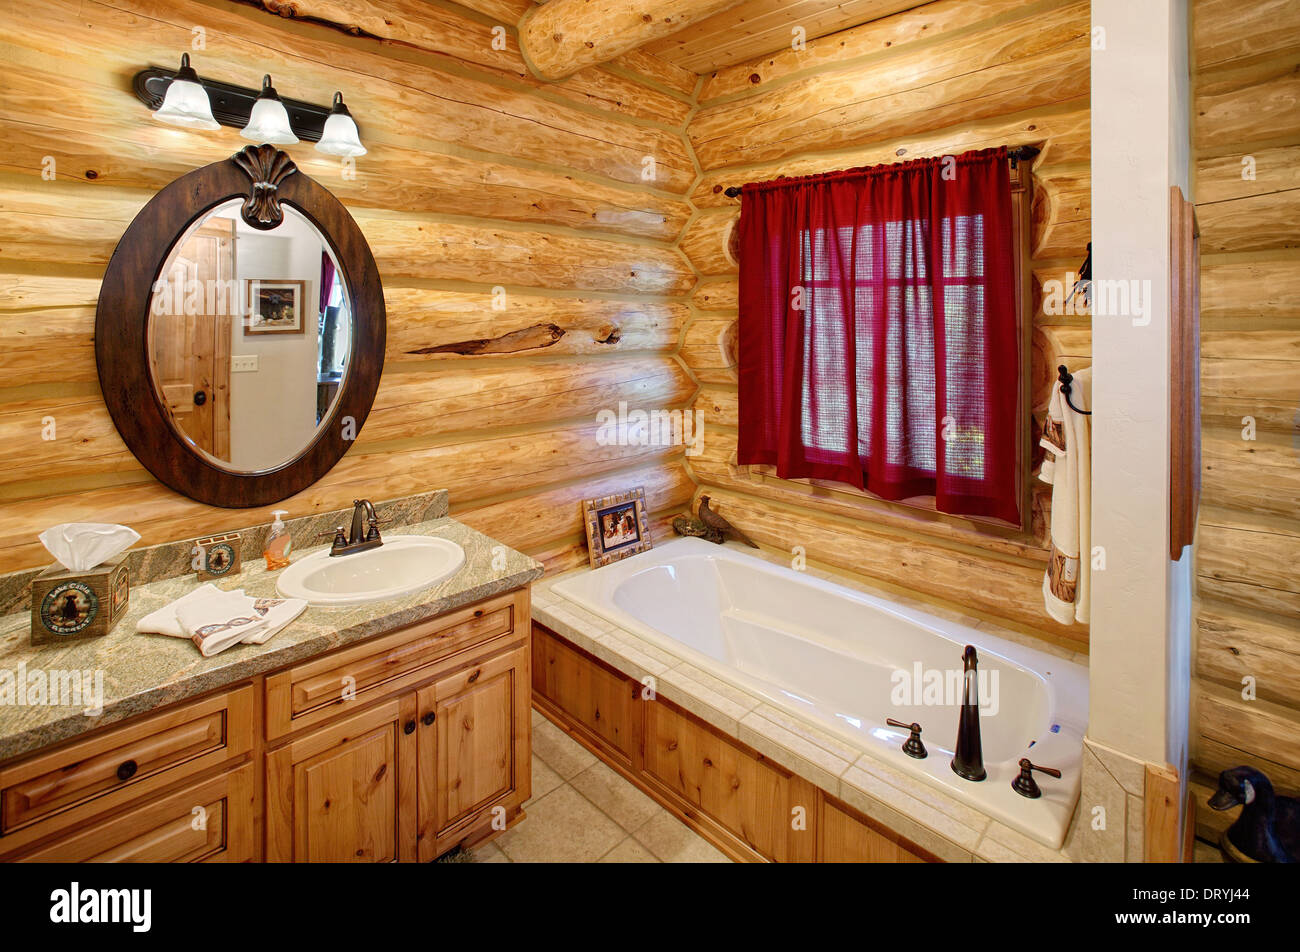 El baño interior en una moderna cabaña de madera. Presenta una decoración  occidental de estilo rústico Fotografía de stock - Alamy